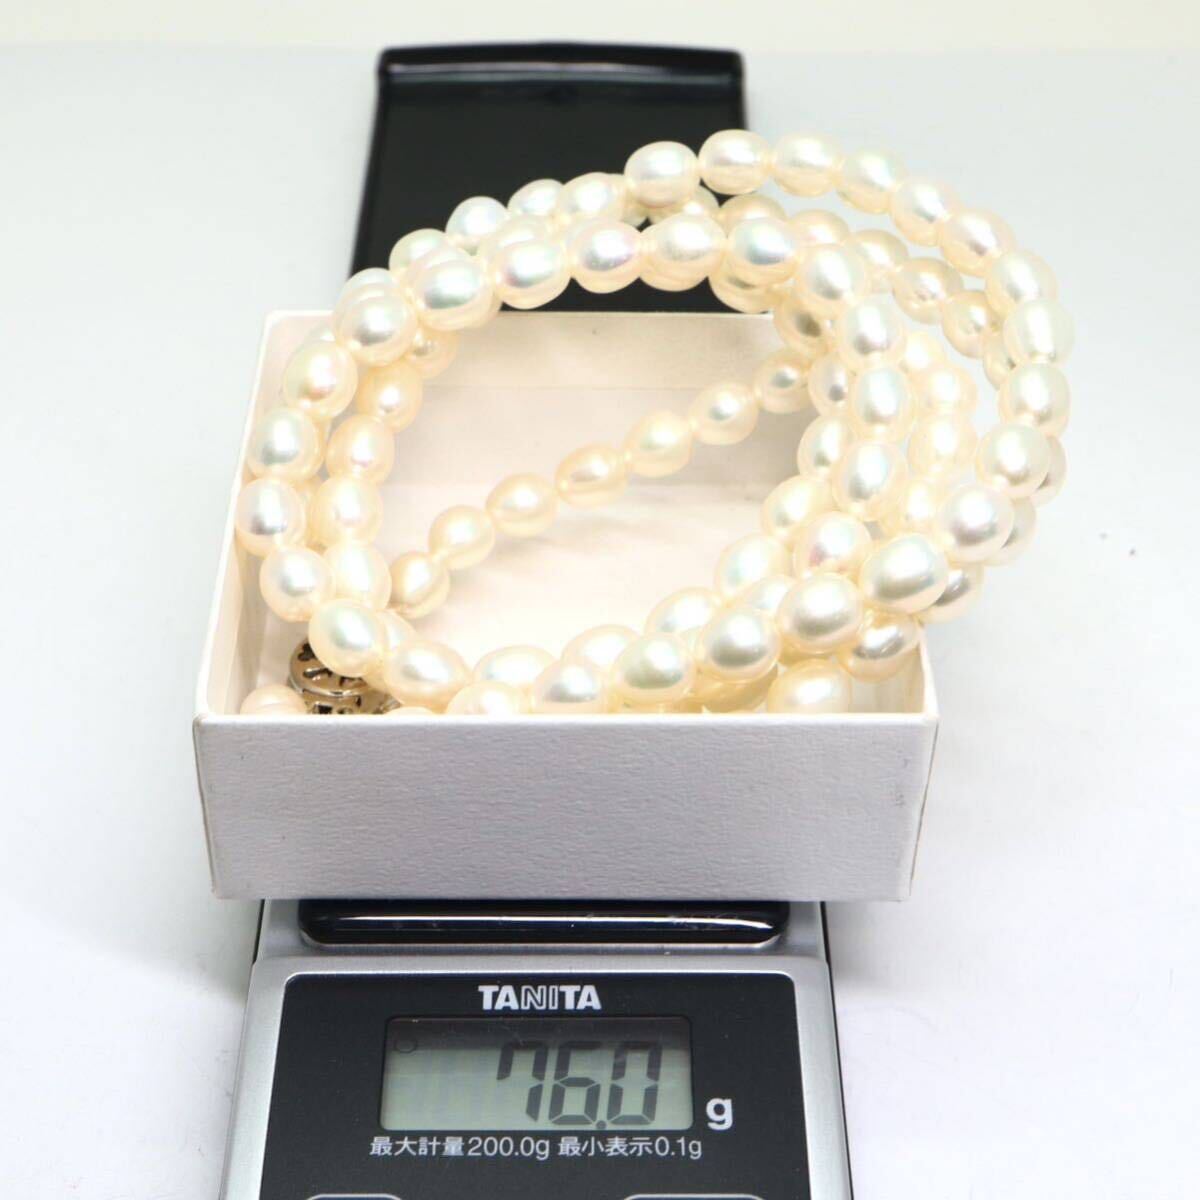 《本真珠2連ネックレス》M 76.0g 約48cm pearl necklace ジュエリー jewelry DB3/DB3